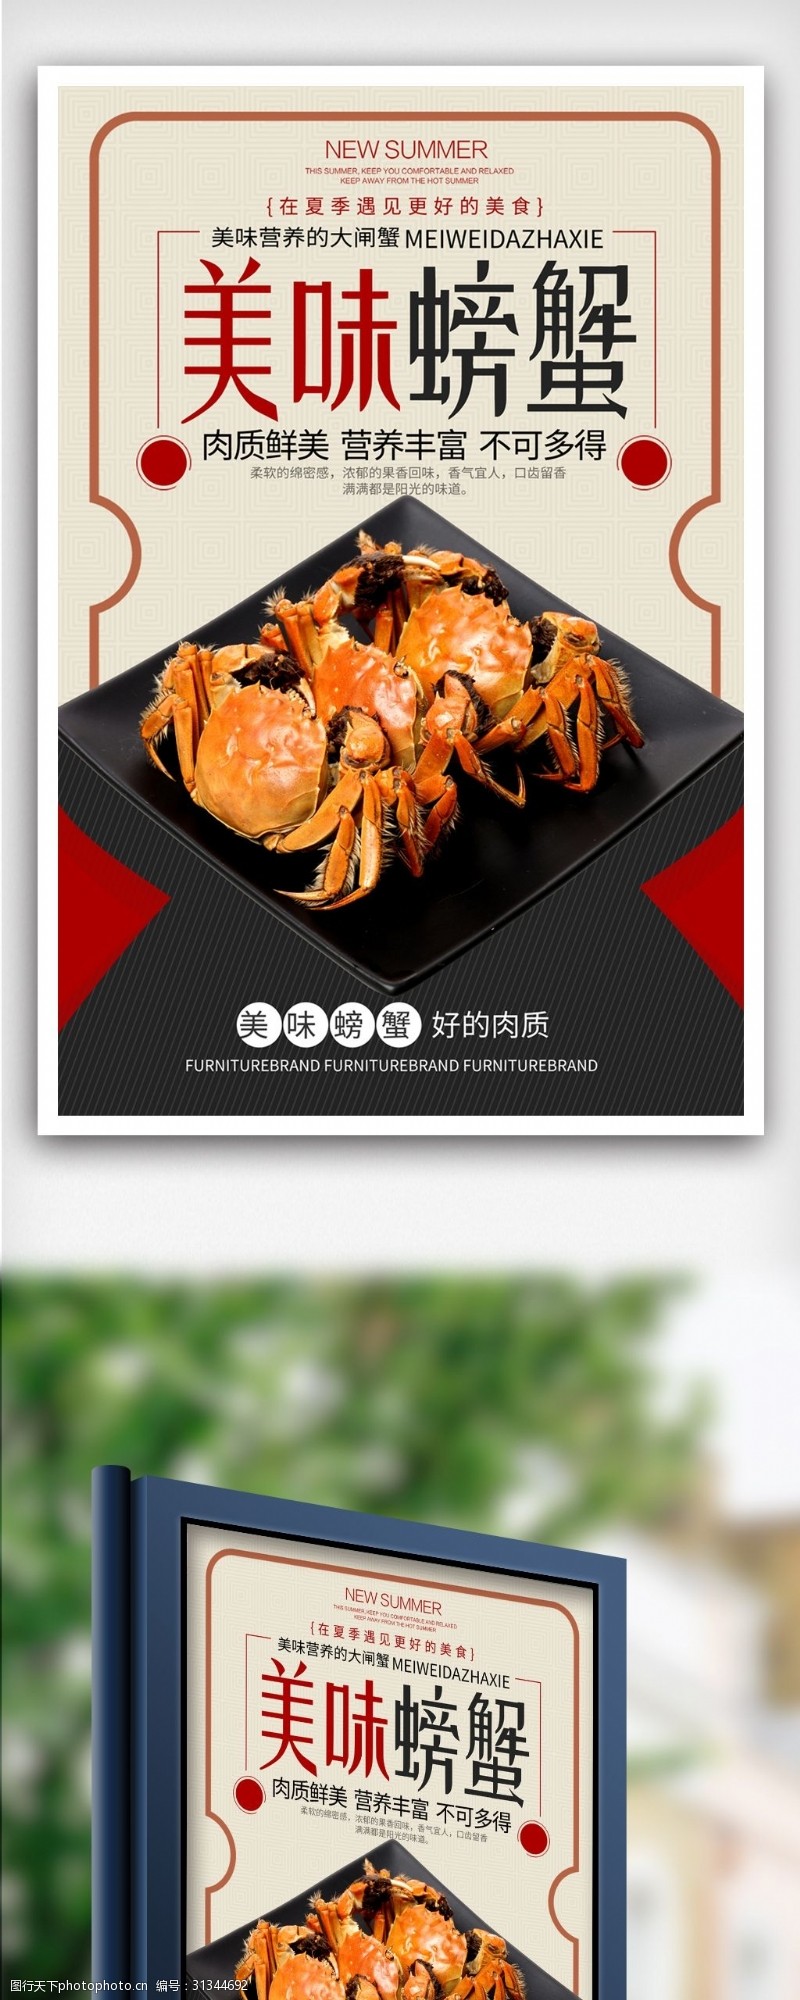 大闸蟹促销美味螃蟹小吃促销海报